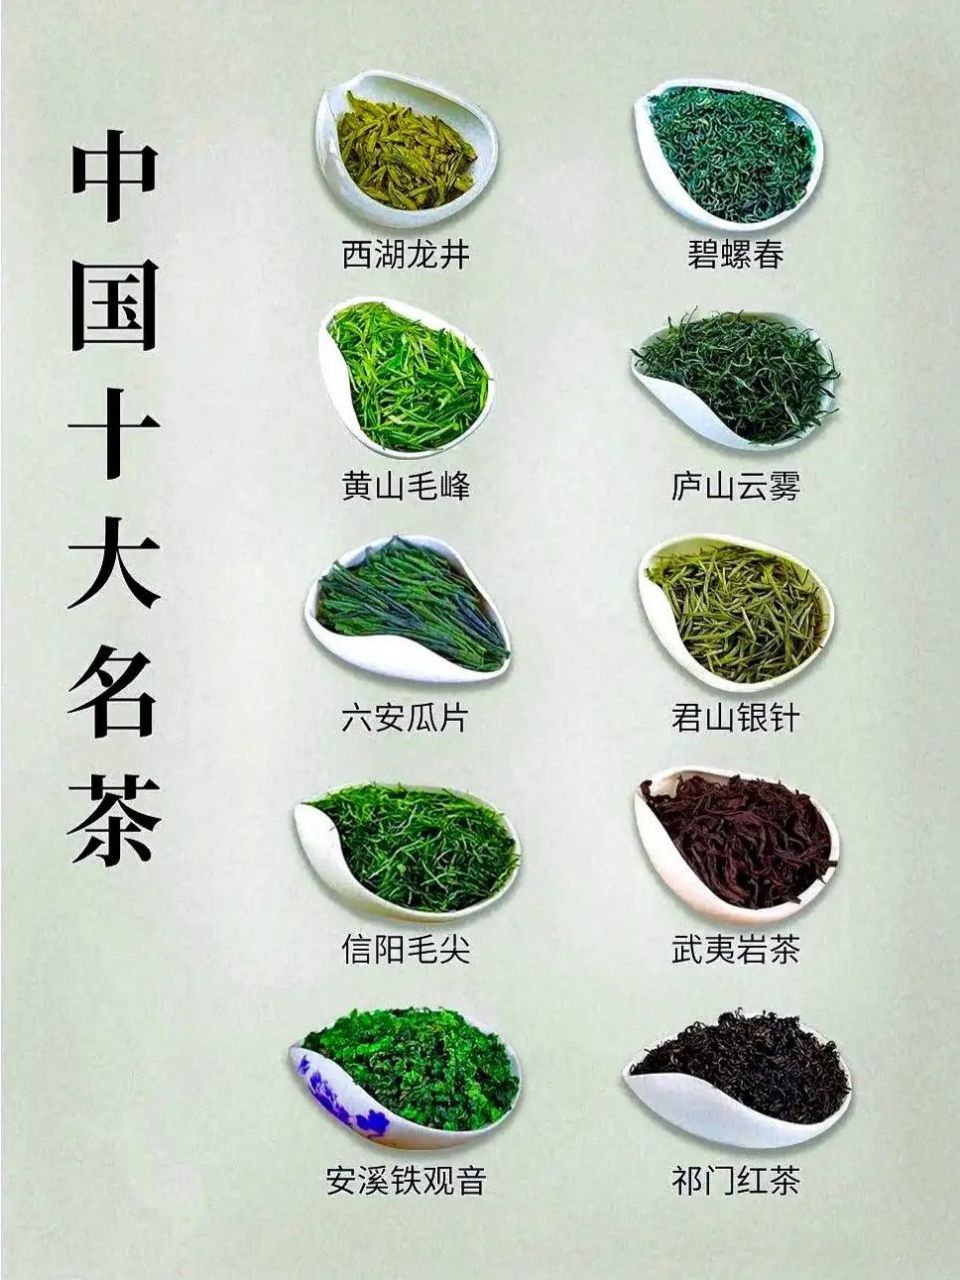 中国十大名茶,你偏爱哪款?欢迎补充